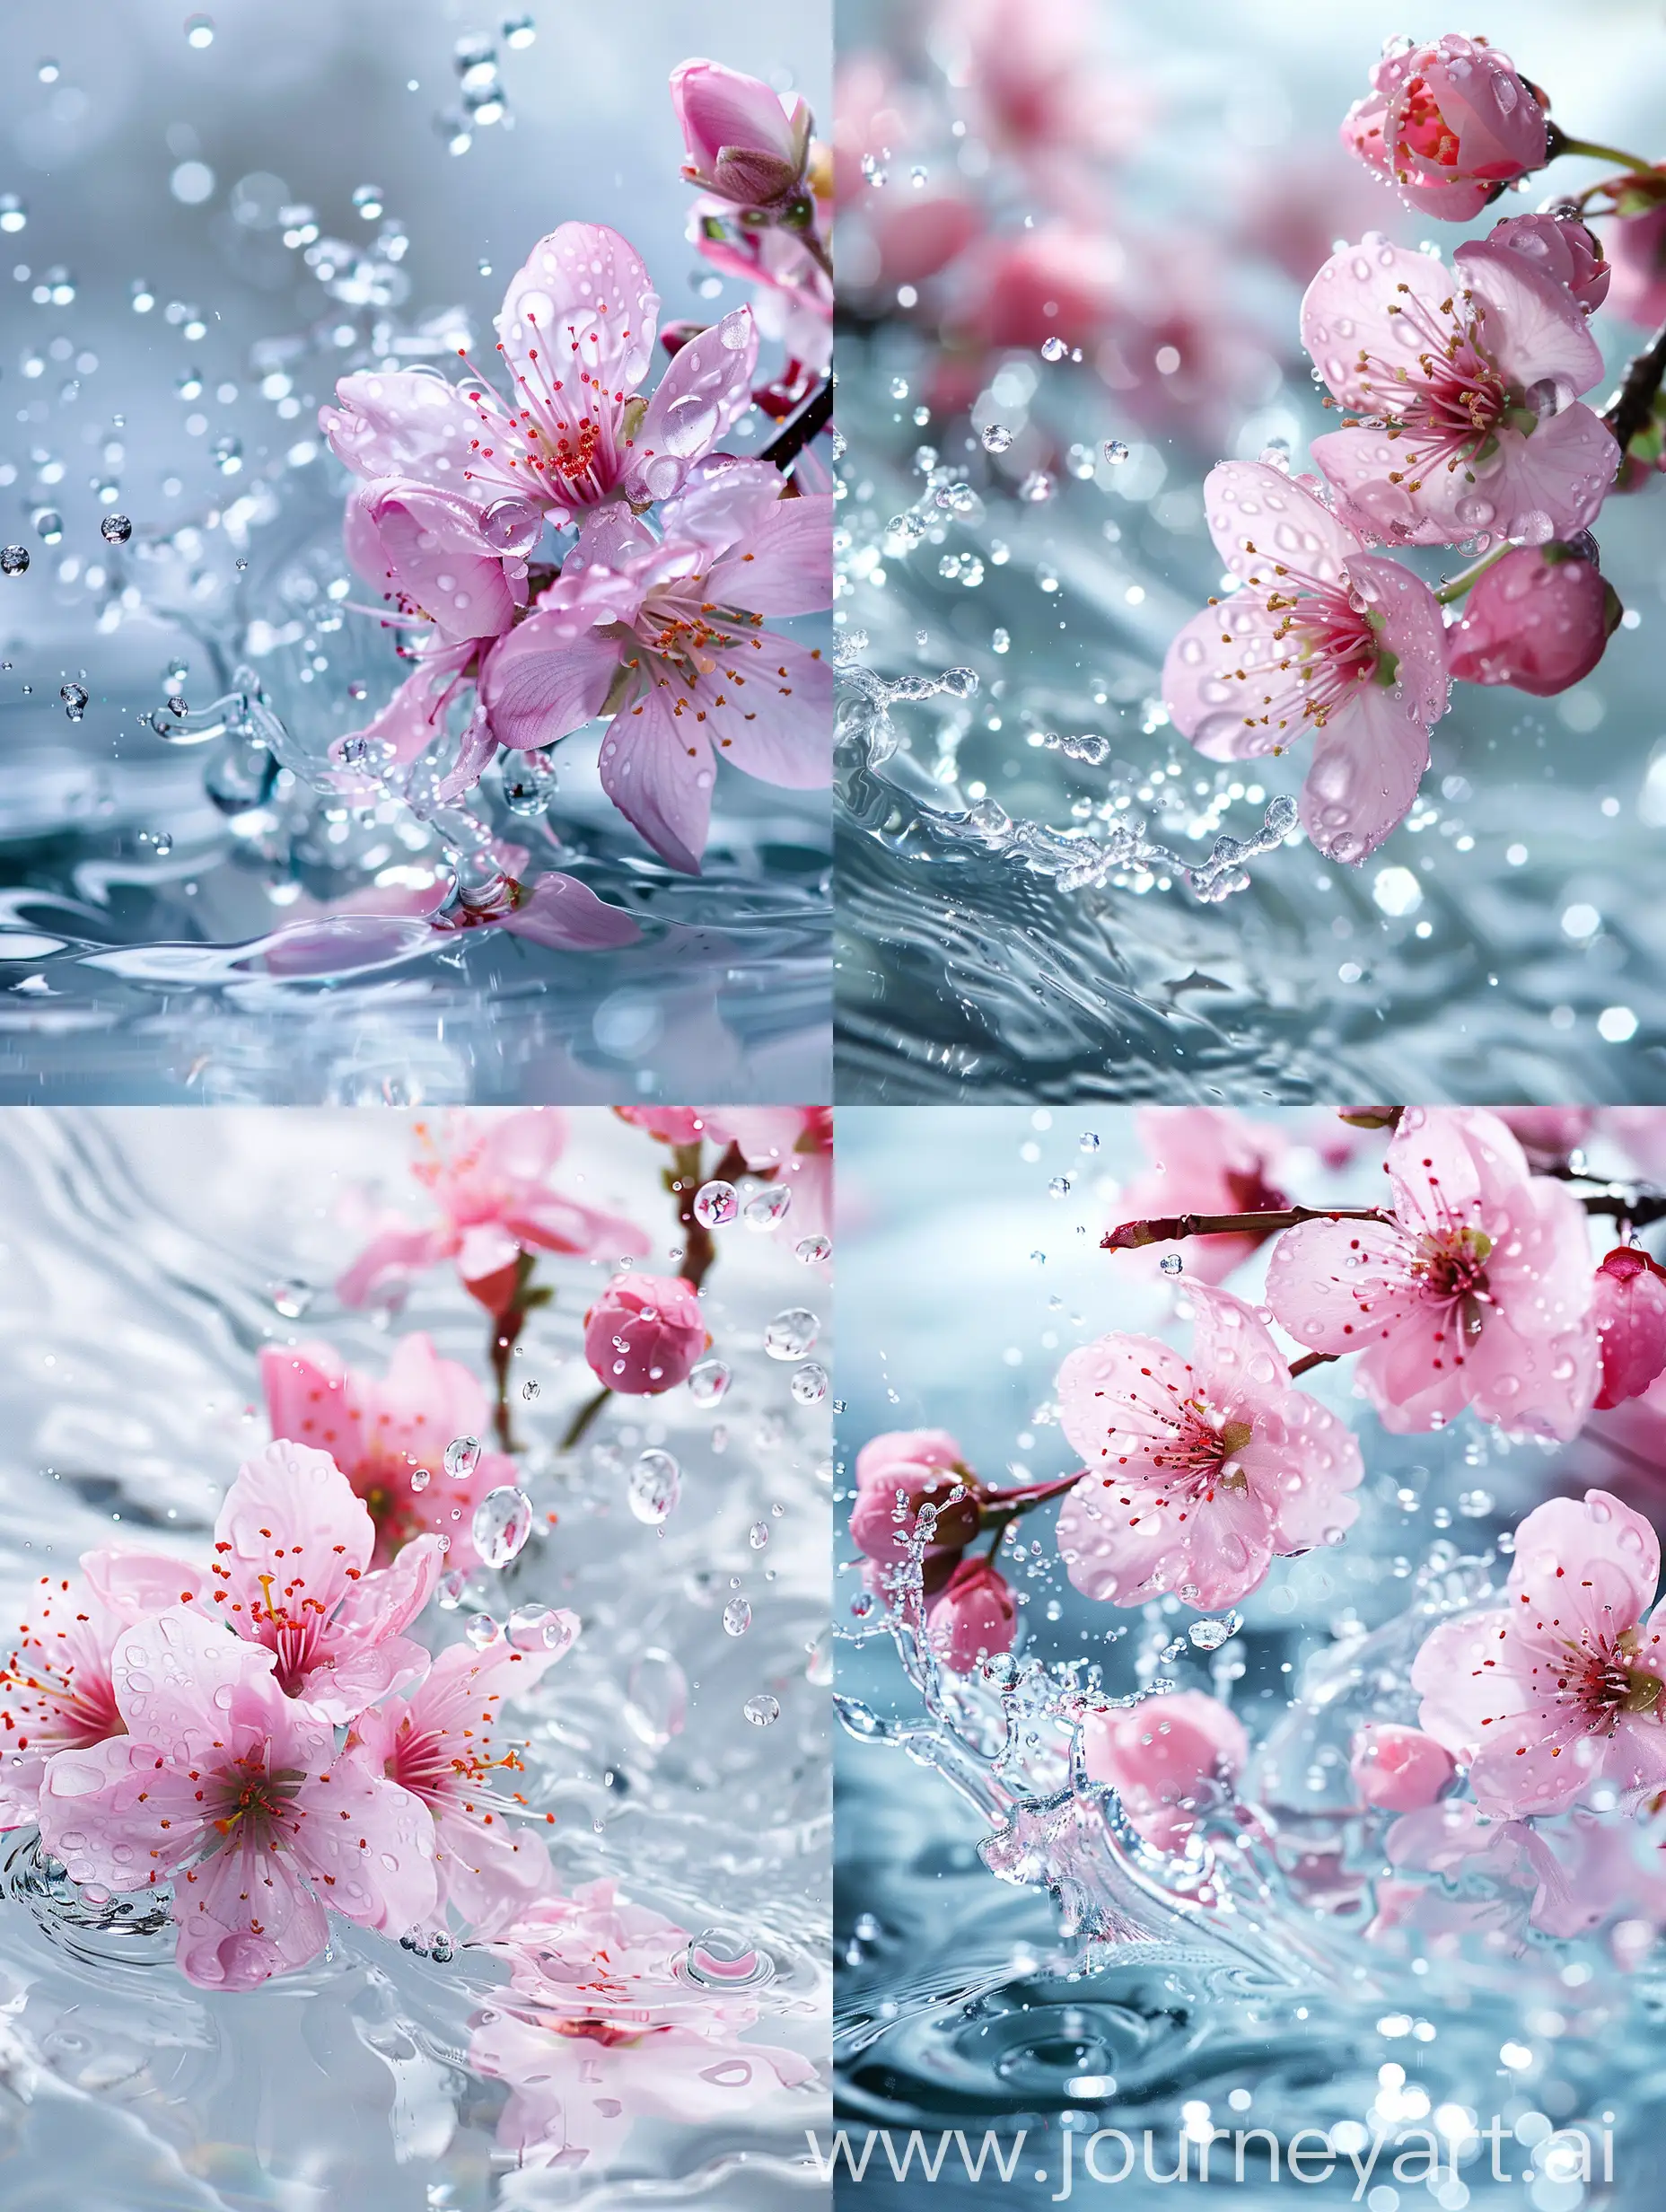 粉红色的桃花，晶莹剔透的珠光水面，水滴飞溅，高清摄影